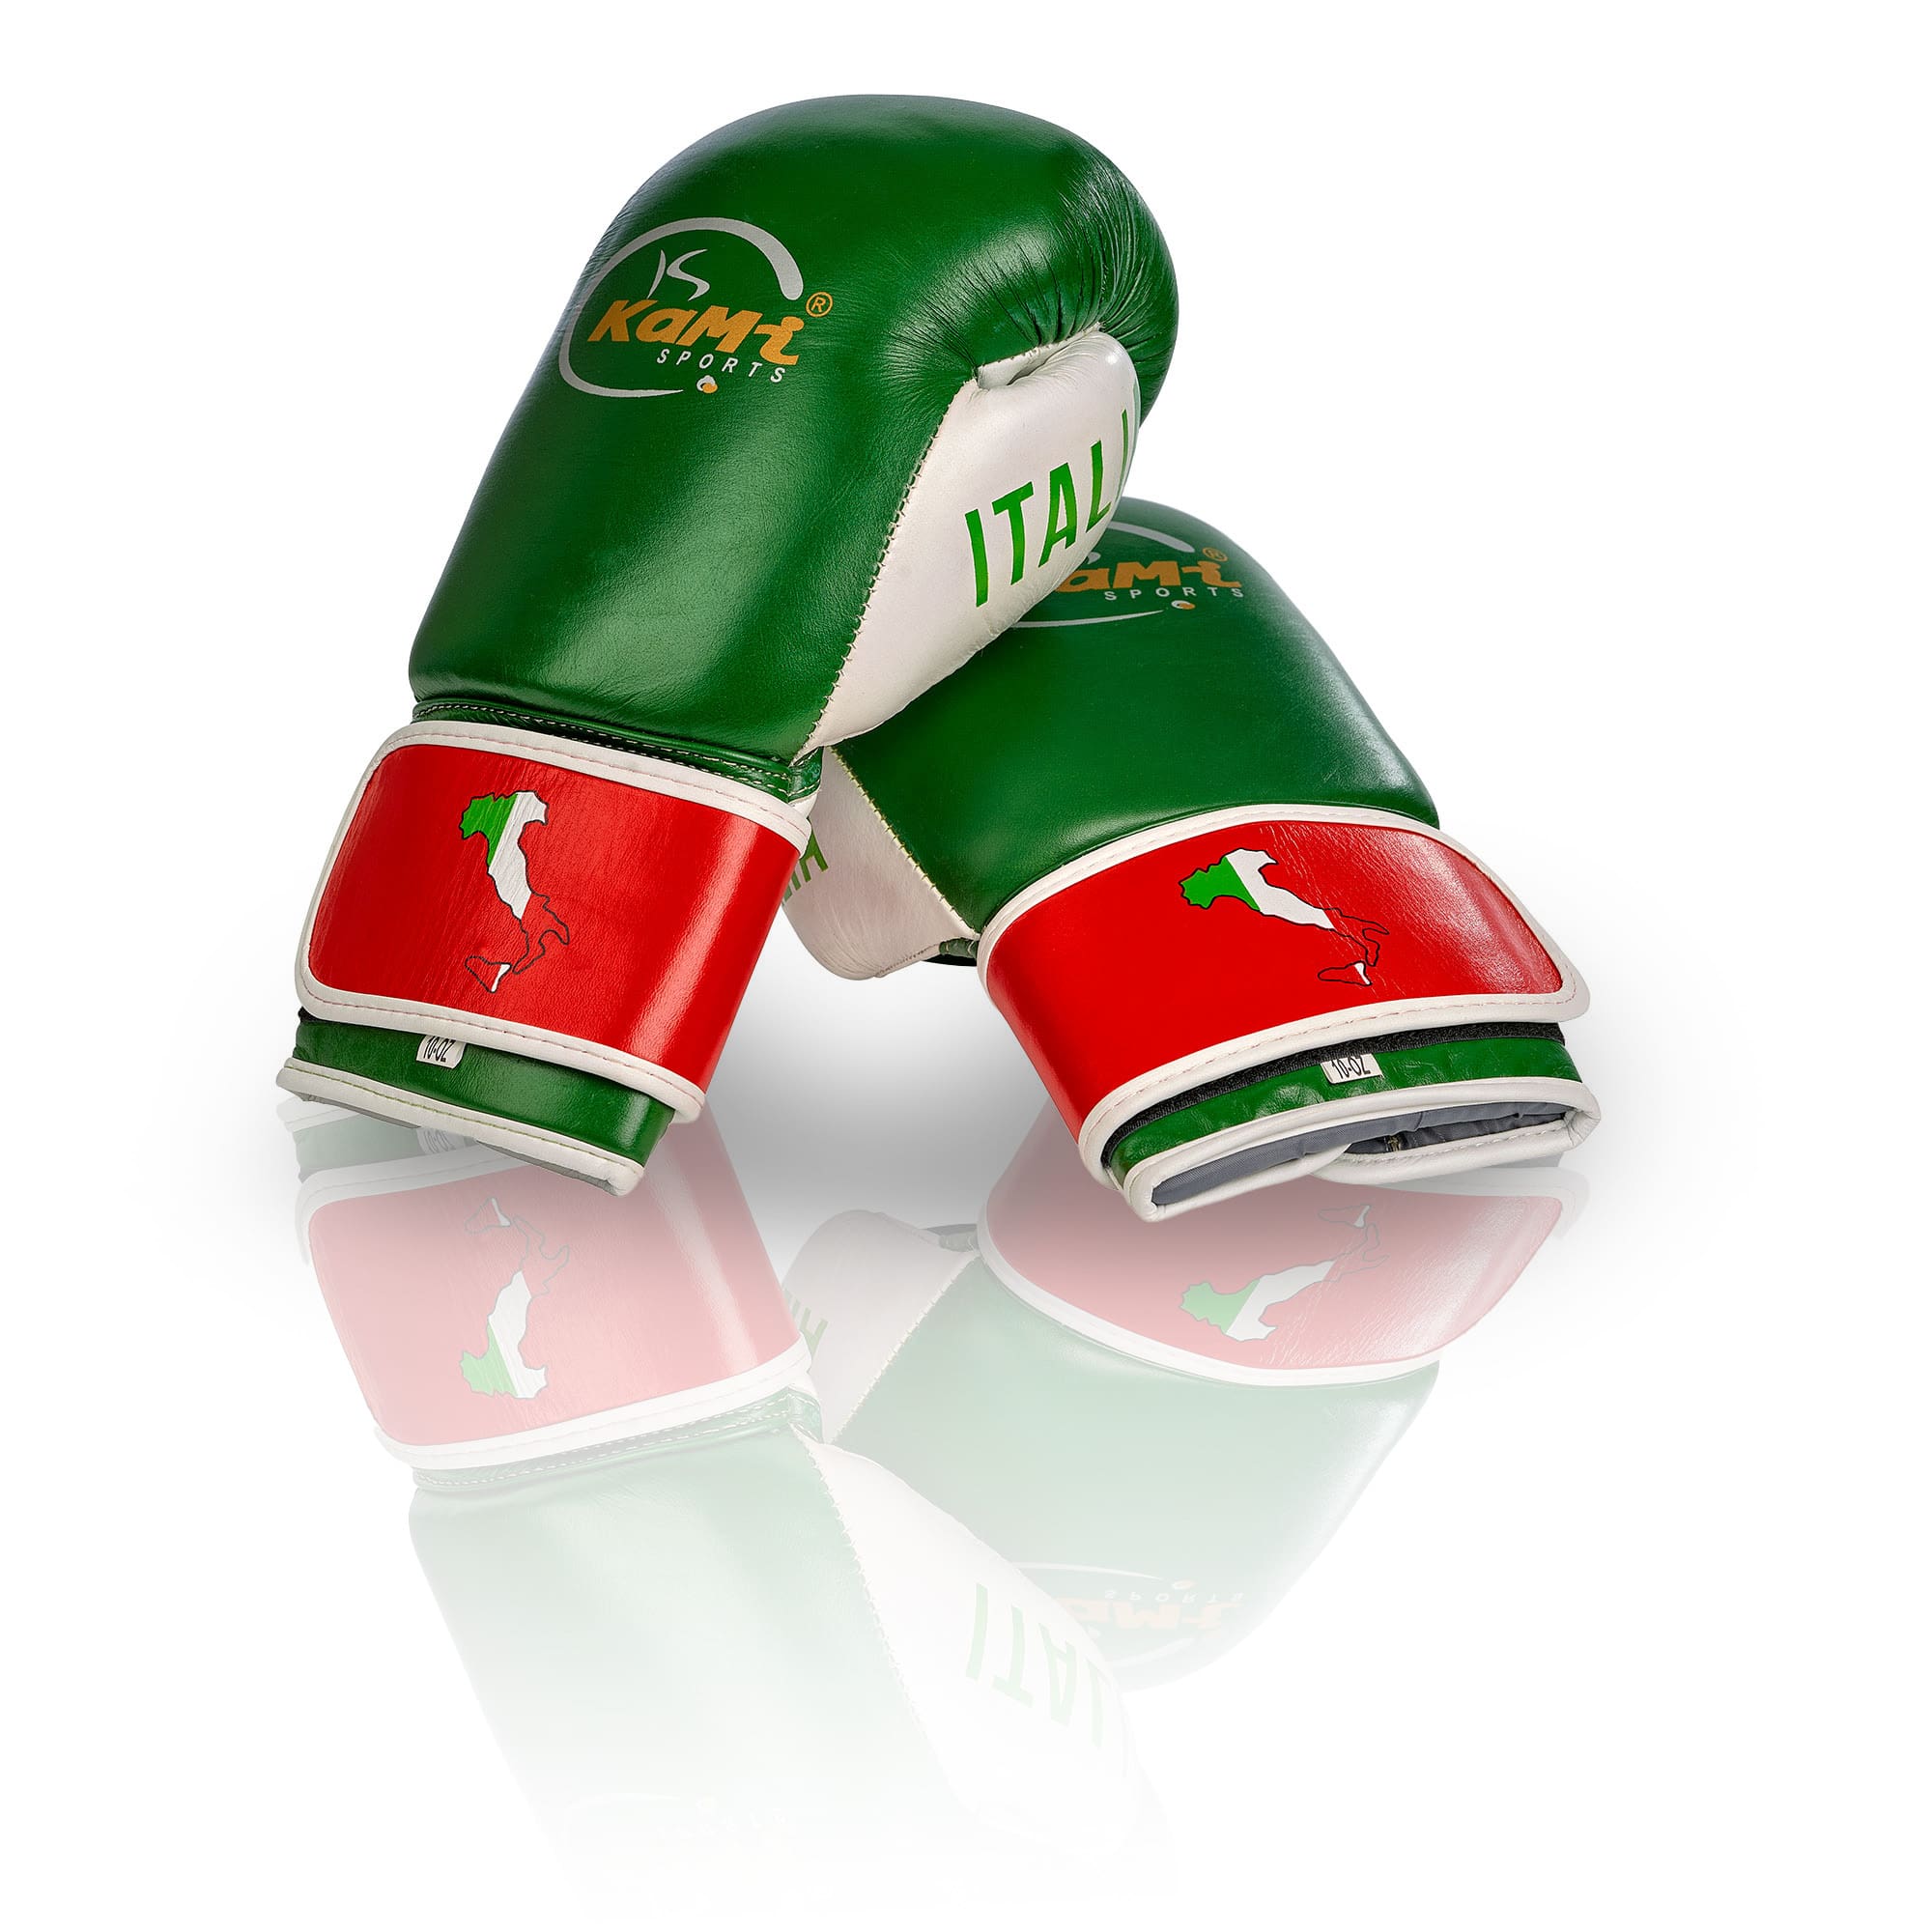 Premium Echtleder Boxhandschuhe mit italienischer Flagge, ideal für alle Boxsportler, fortschrittlicher Schutz, stilvolles Design.